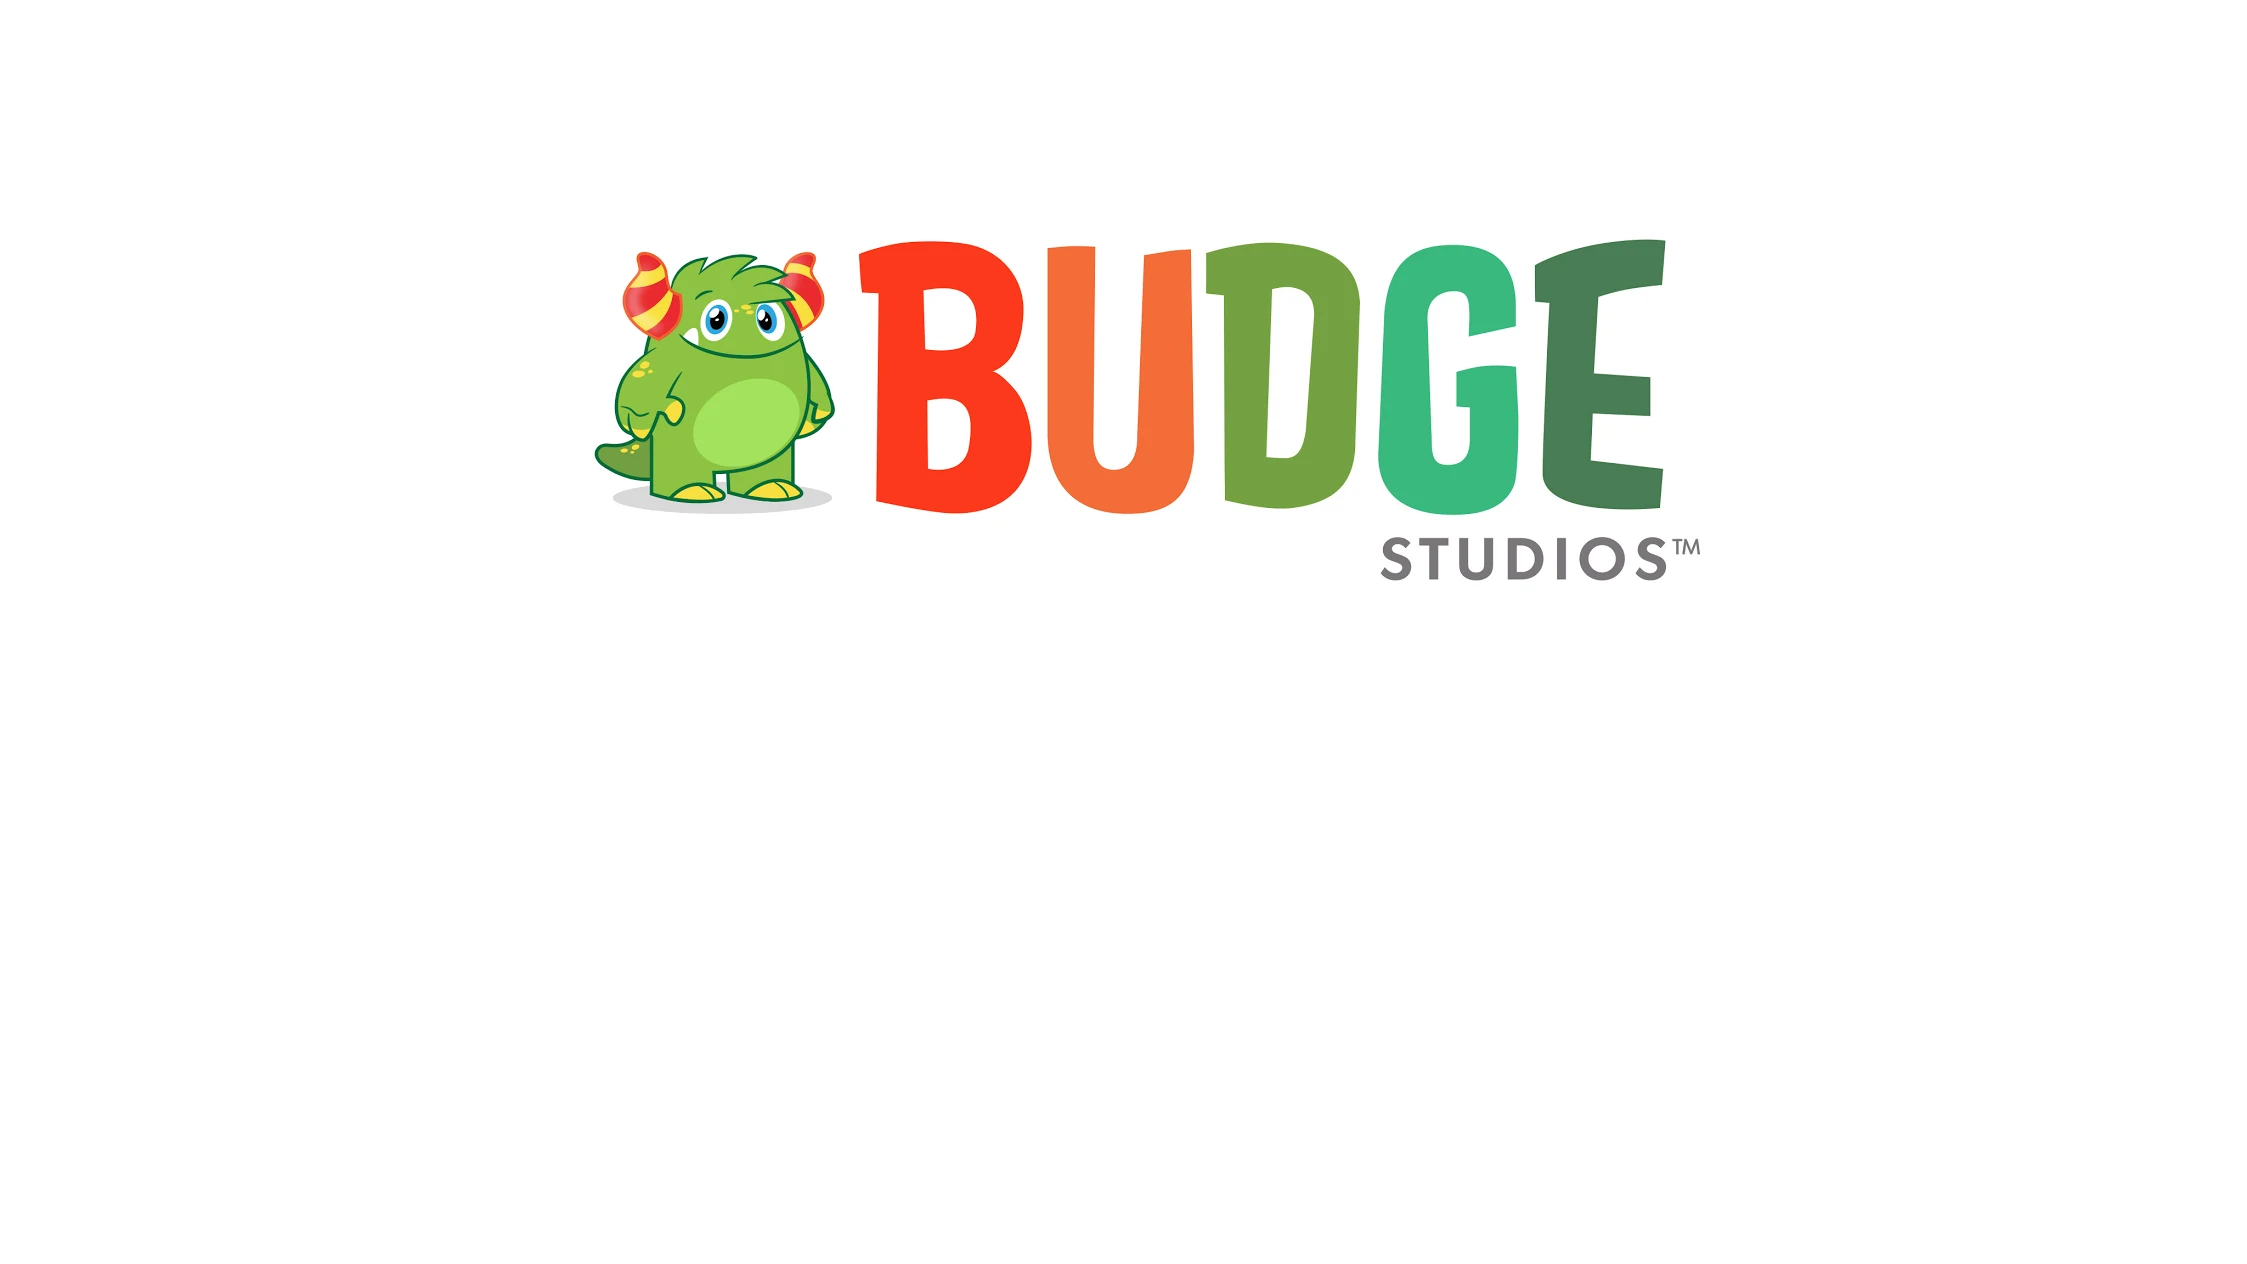 Budge Studios